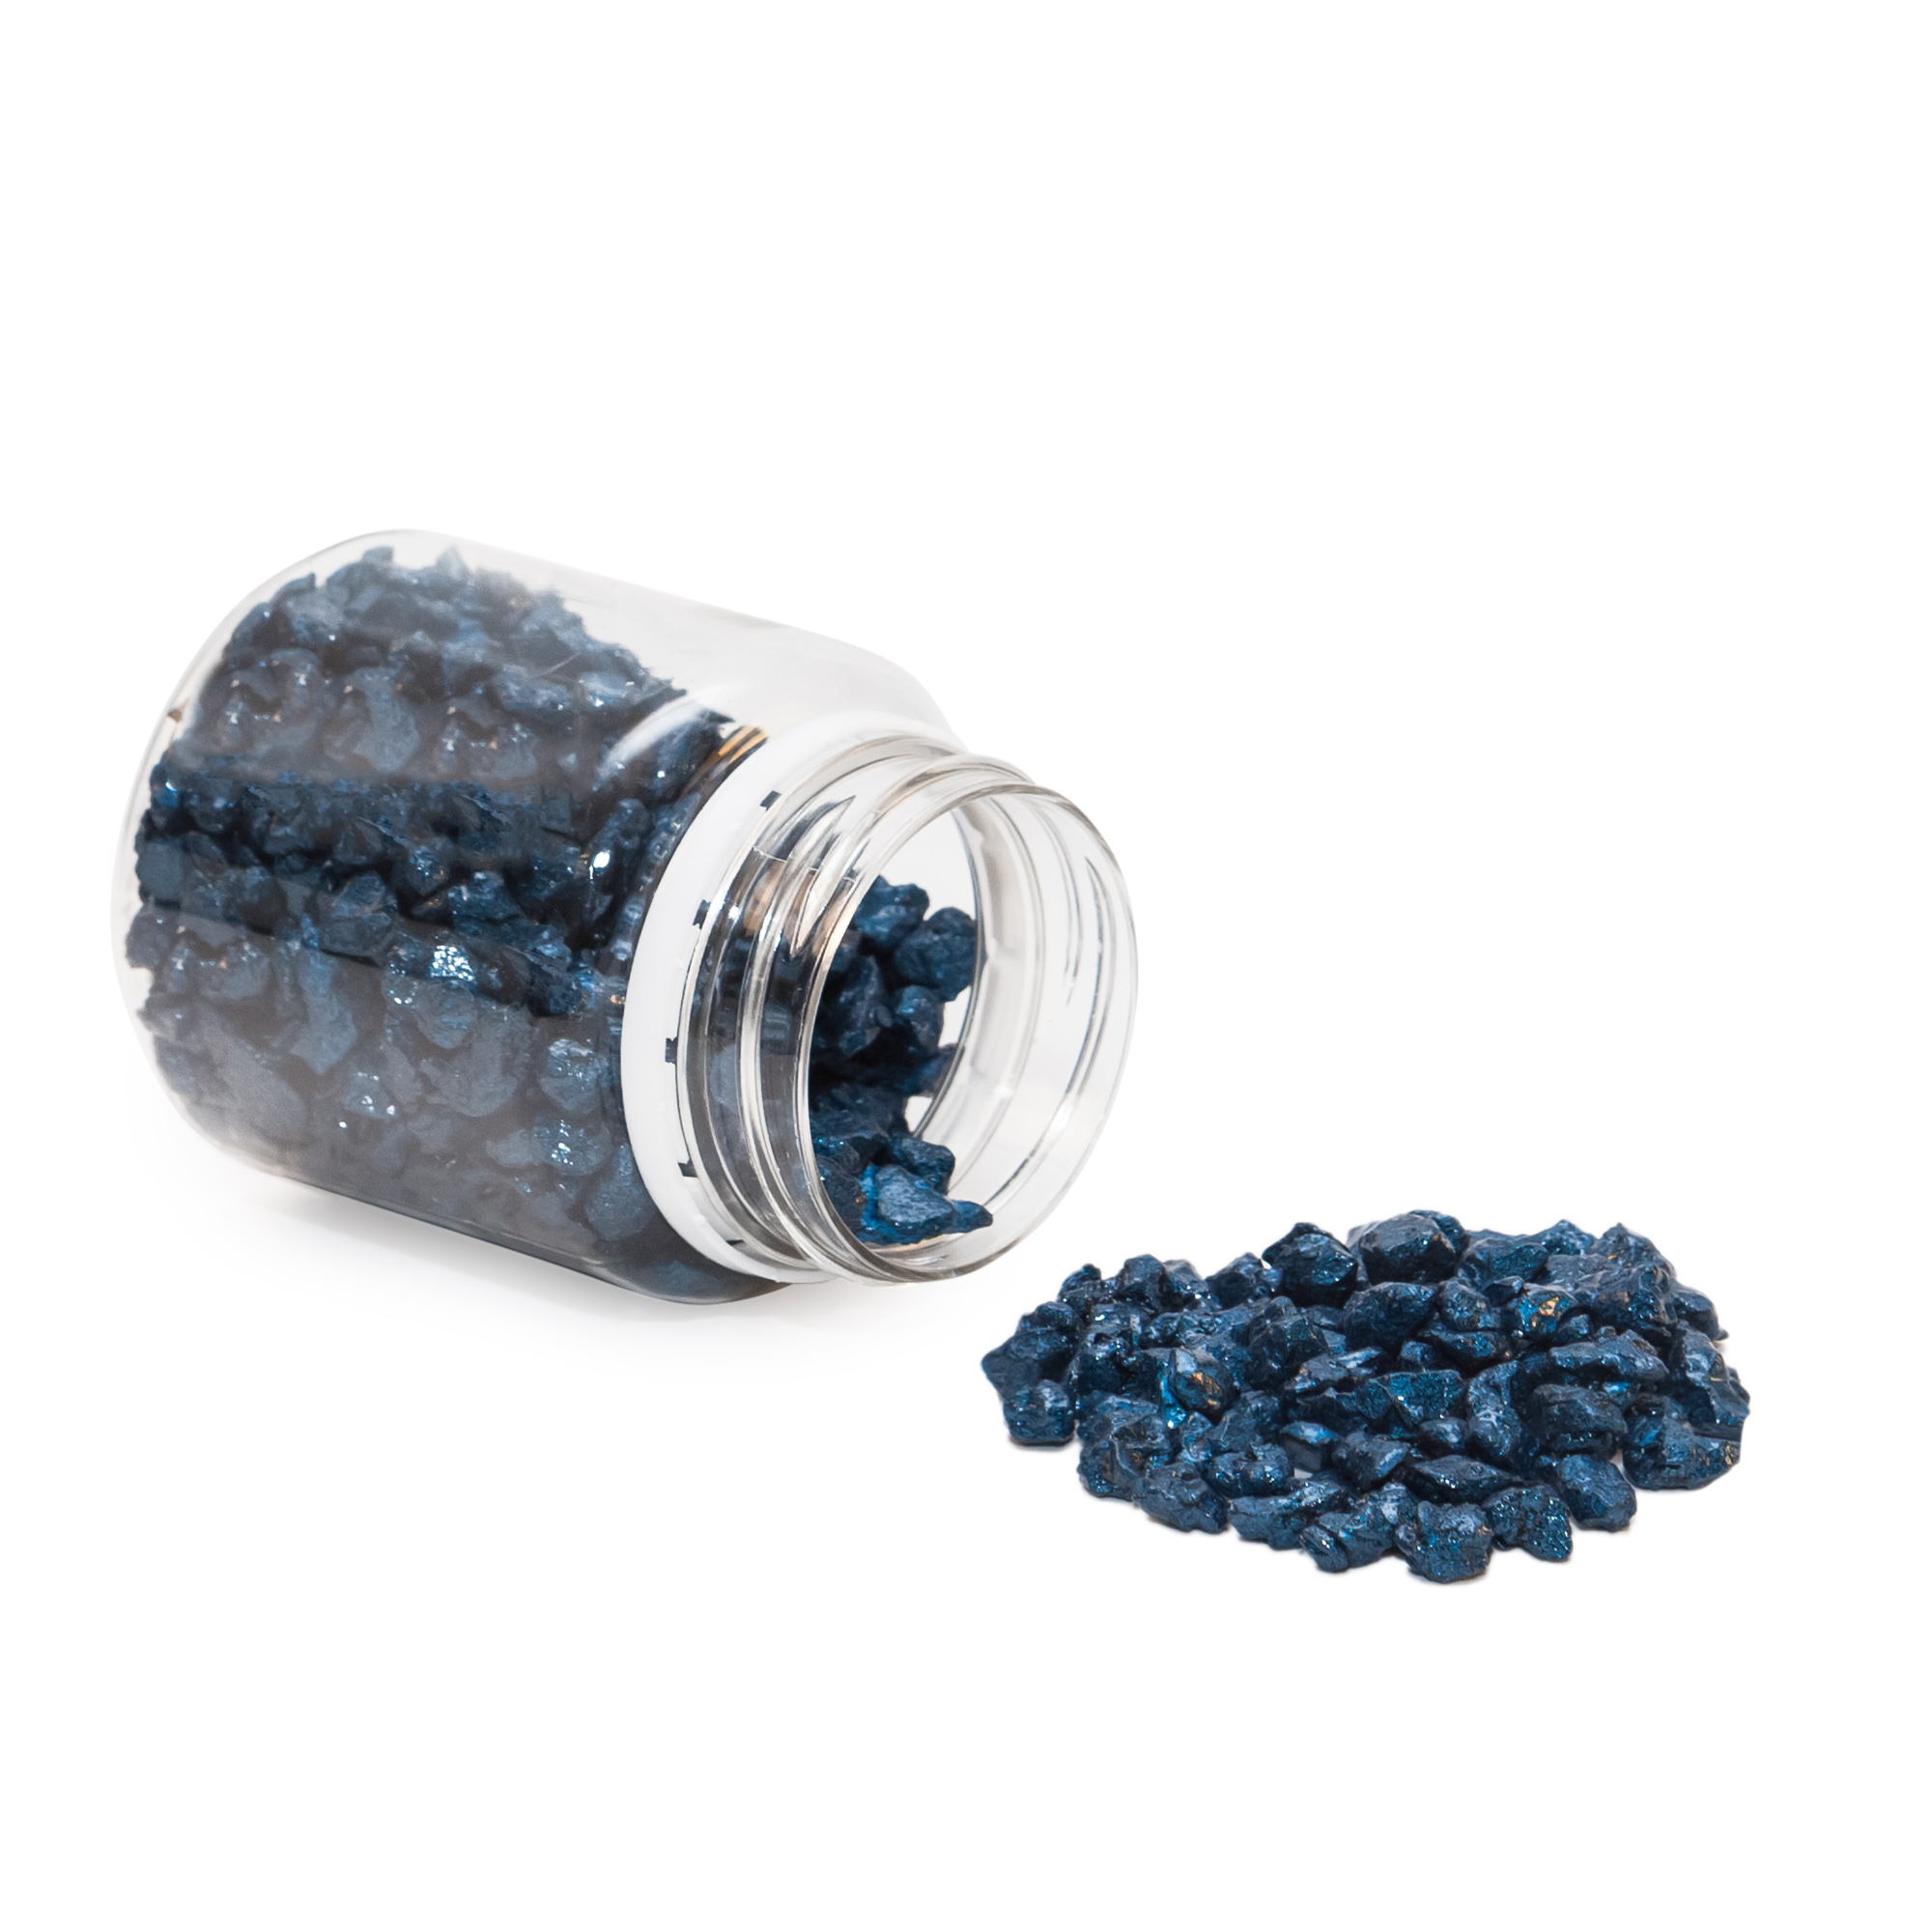 Декоративный наполнитель (камни) PolyMax цвет Перламутровый-Синий 3-5 мм 100 г